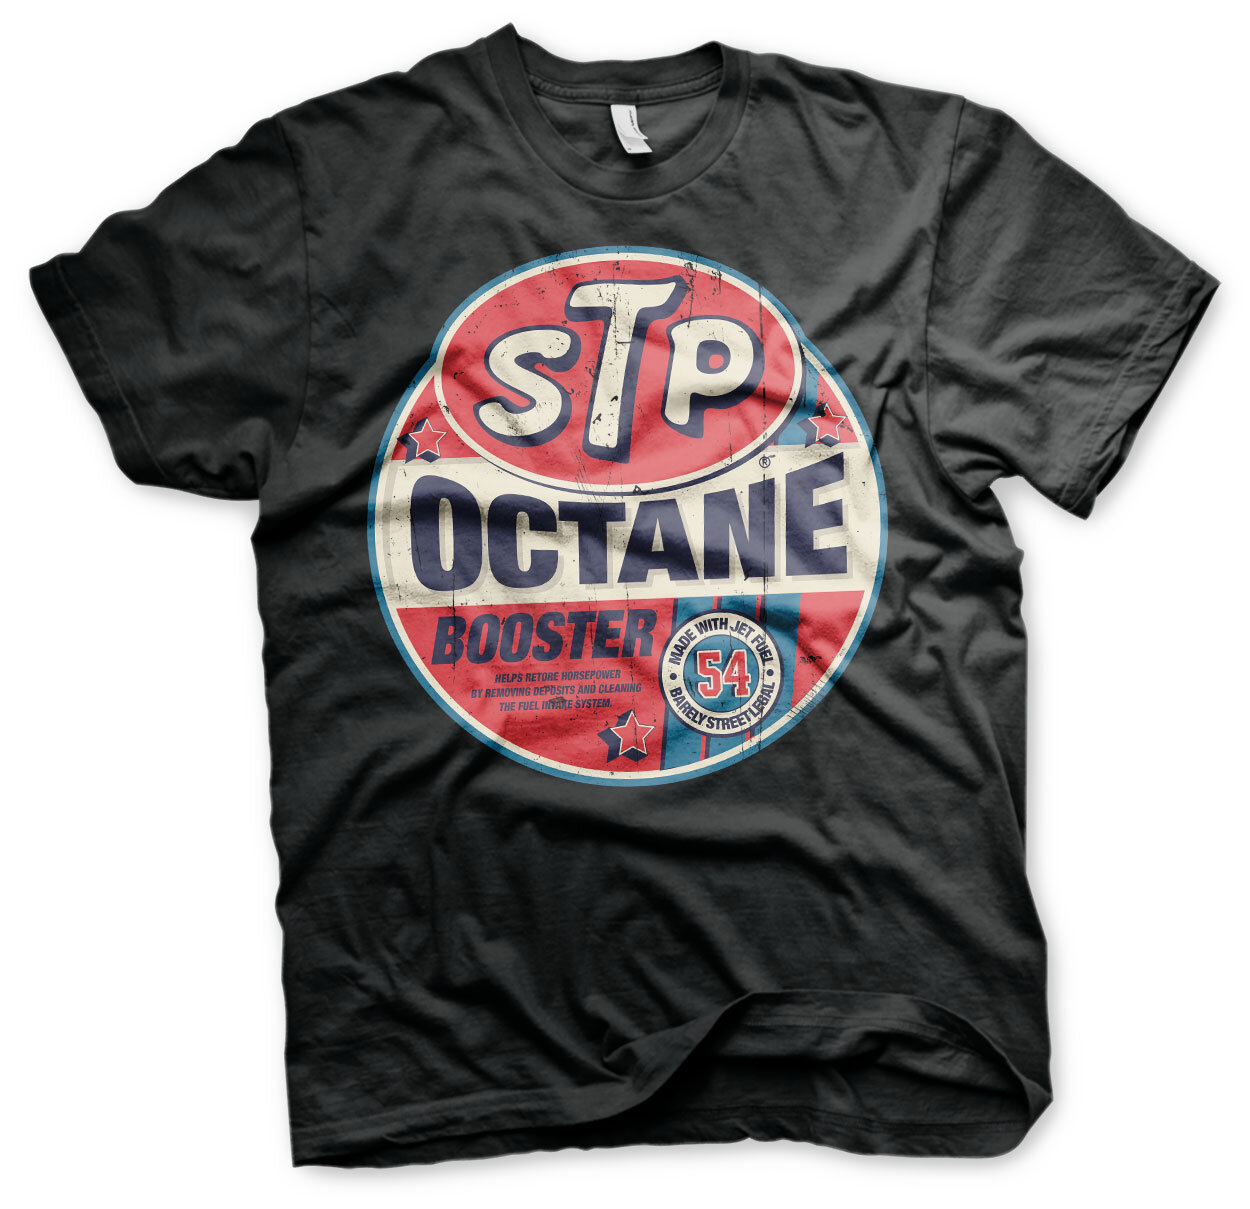 STP Octane Booster T-Shirt